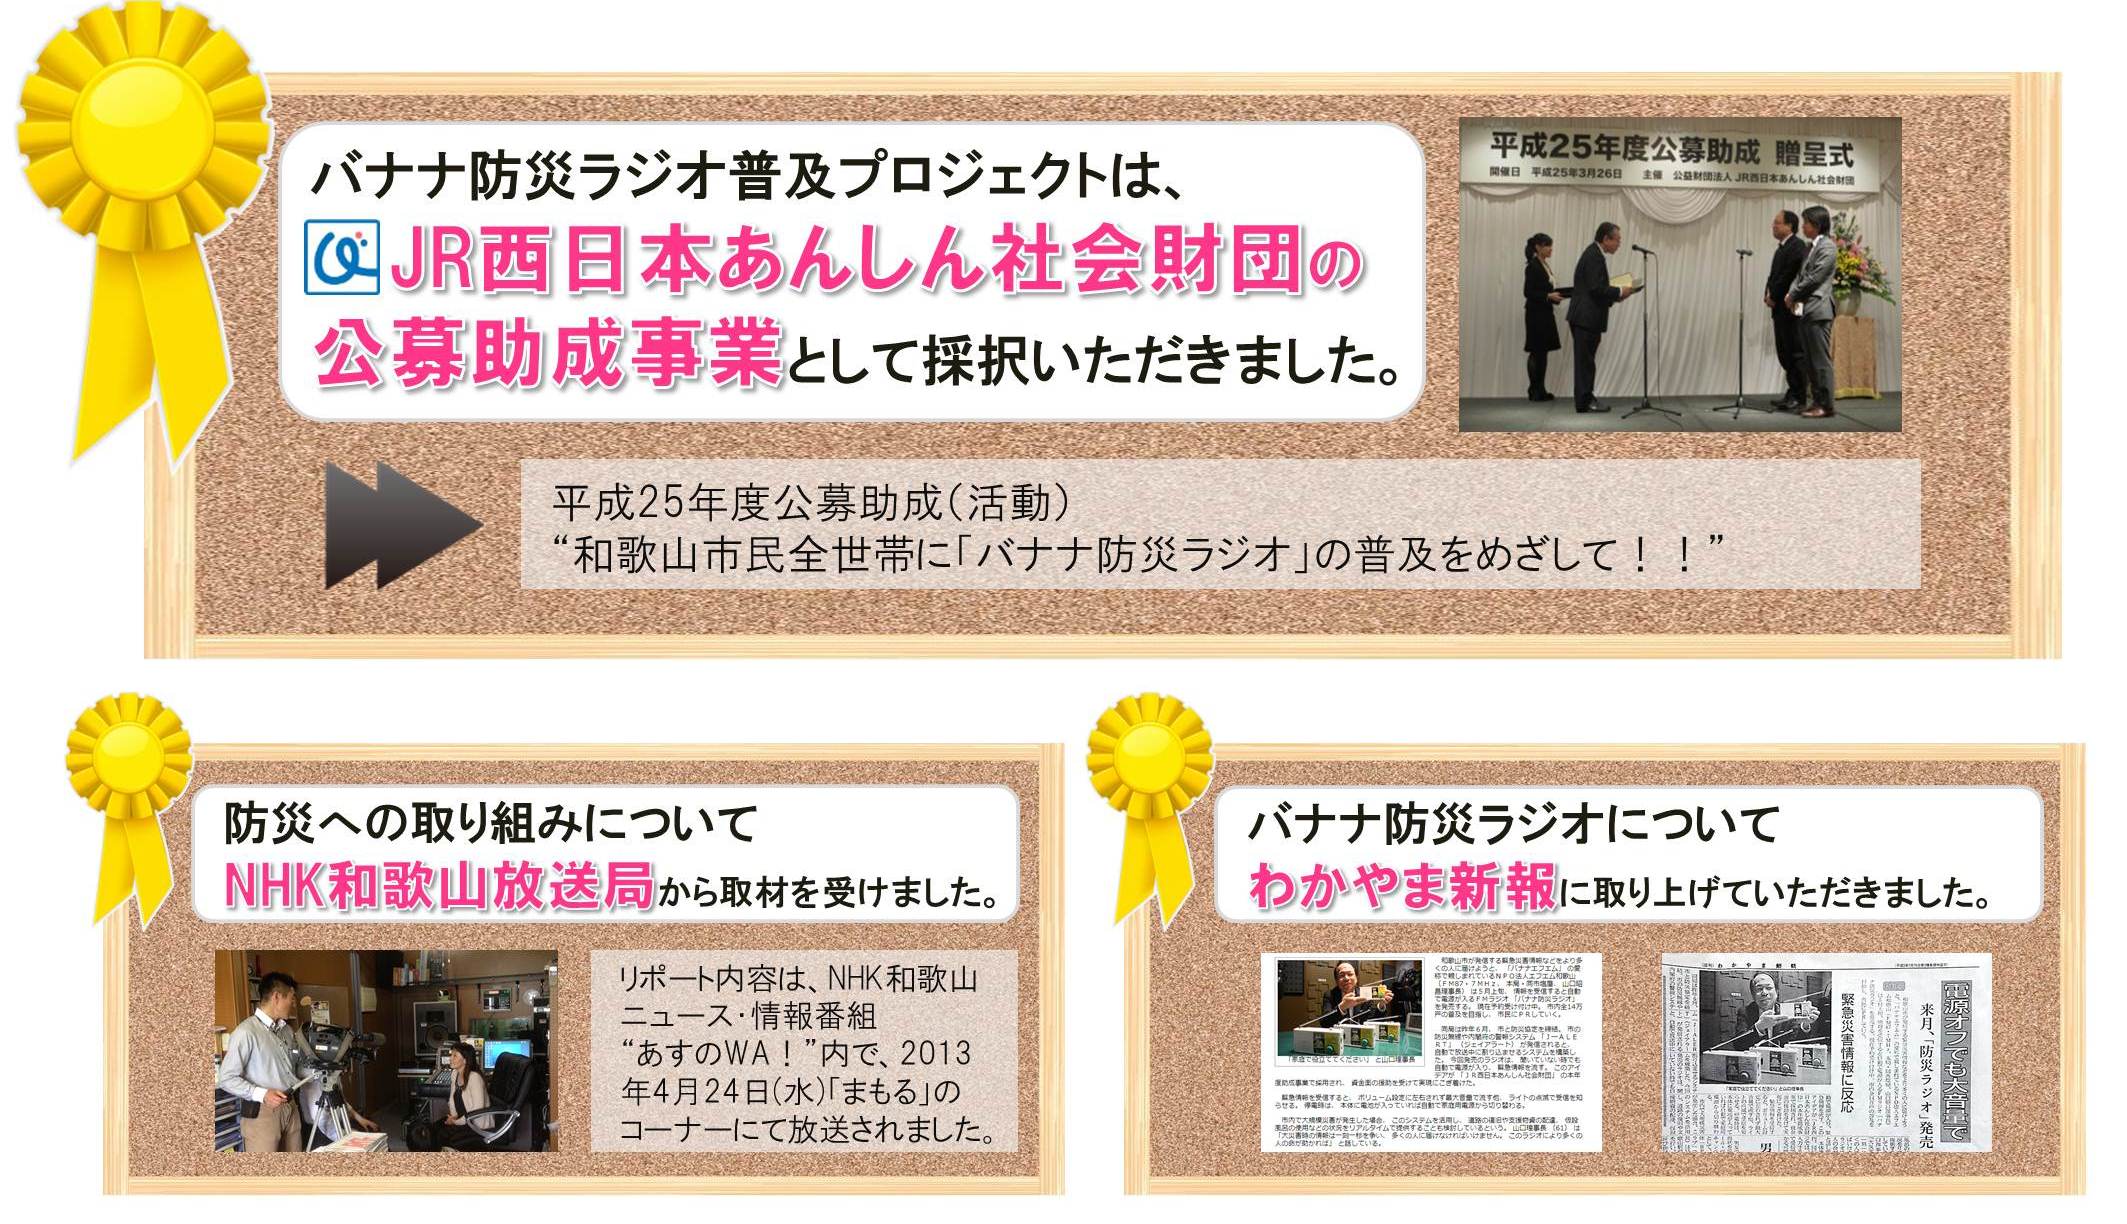 バナナ防災ラジオ普及プロジェクトはJR西日本あんしん社会財団の公募助成事業として選ばれました